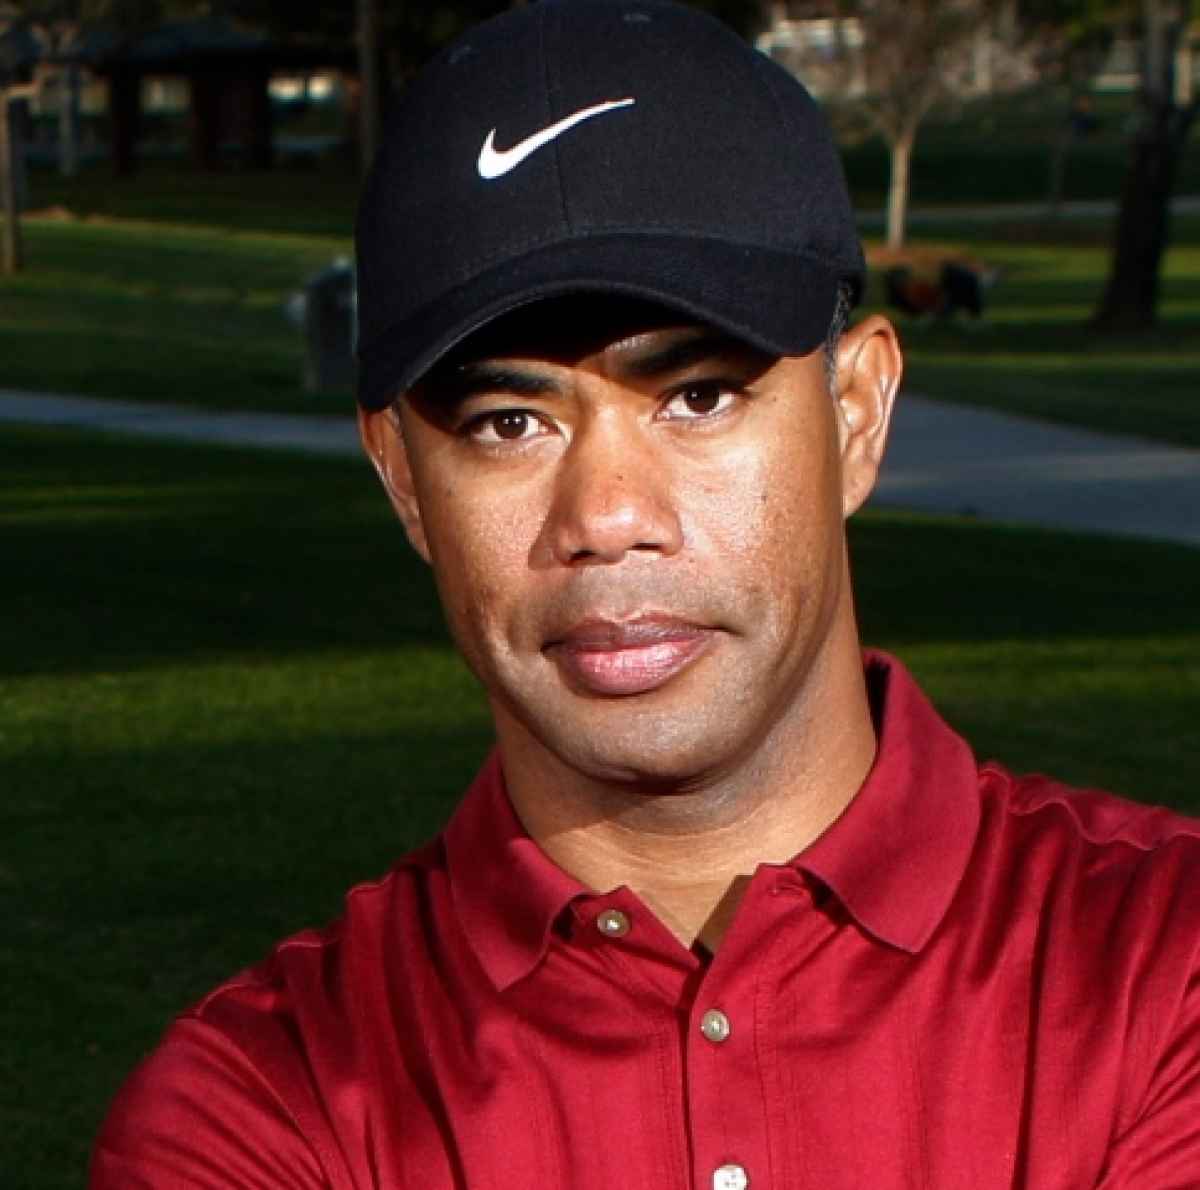 Tiger Woods impersonator arrested for sexting harassment GolfMagic image